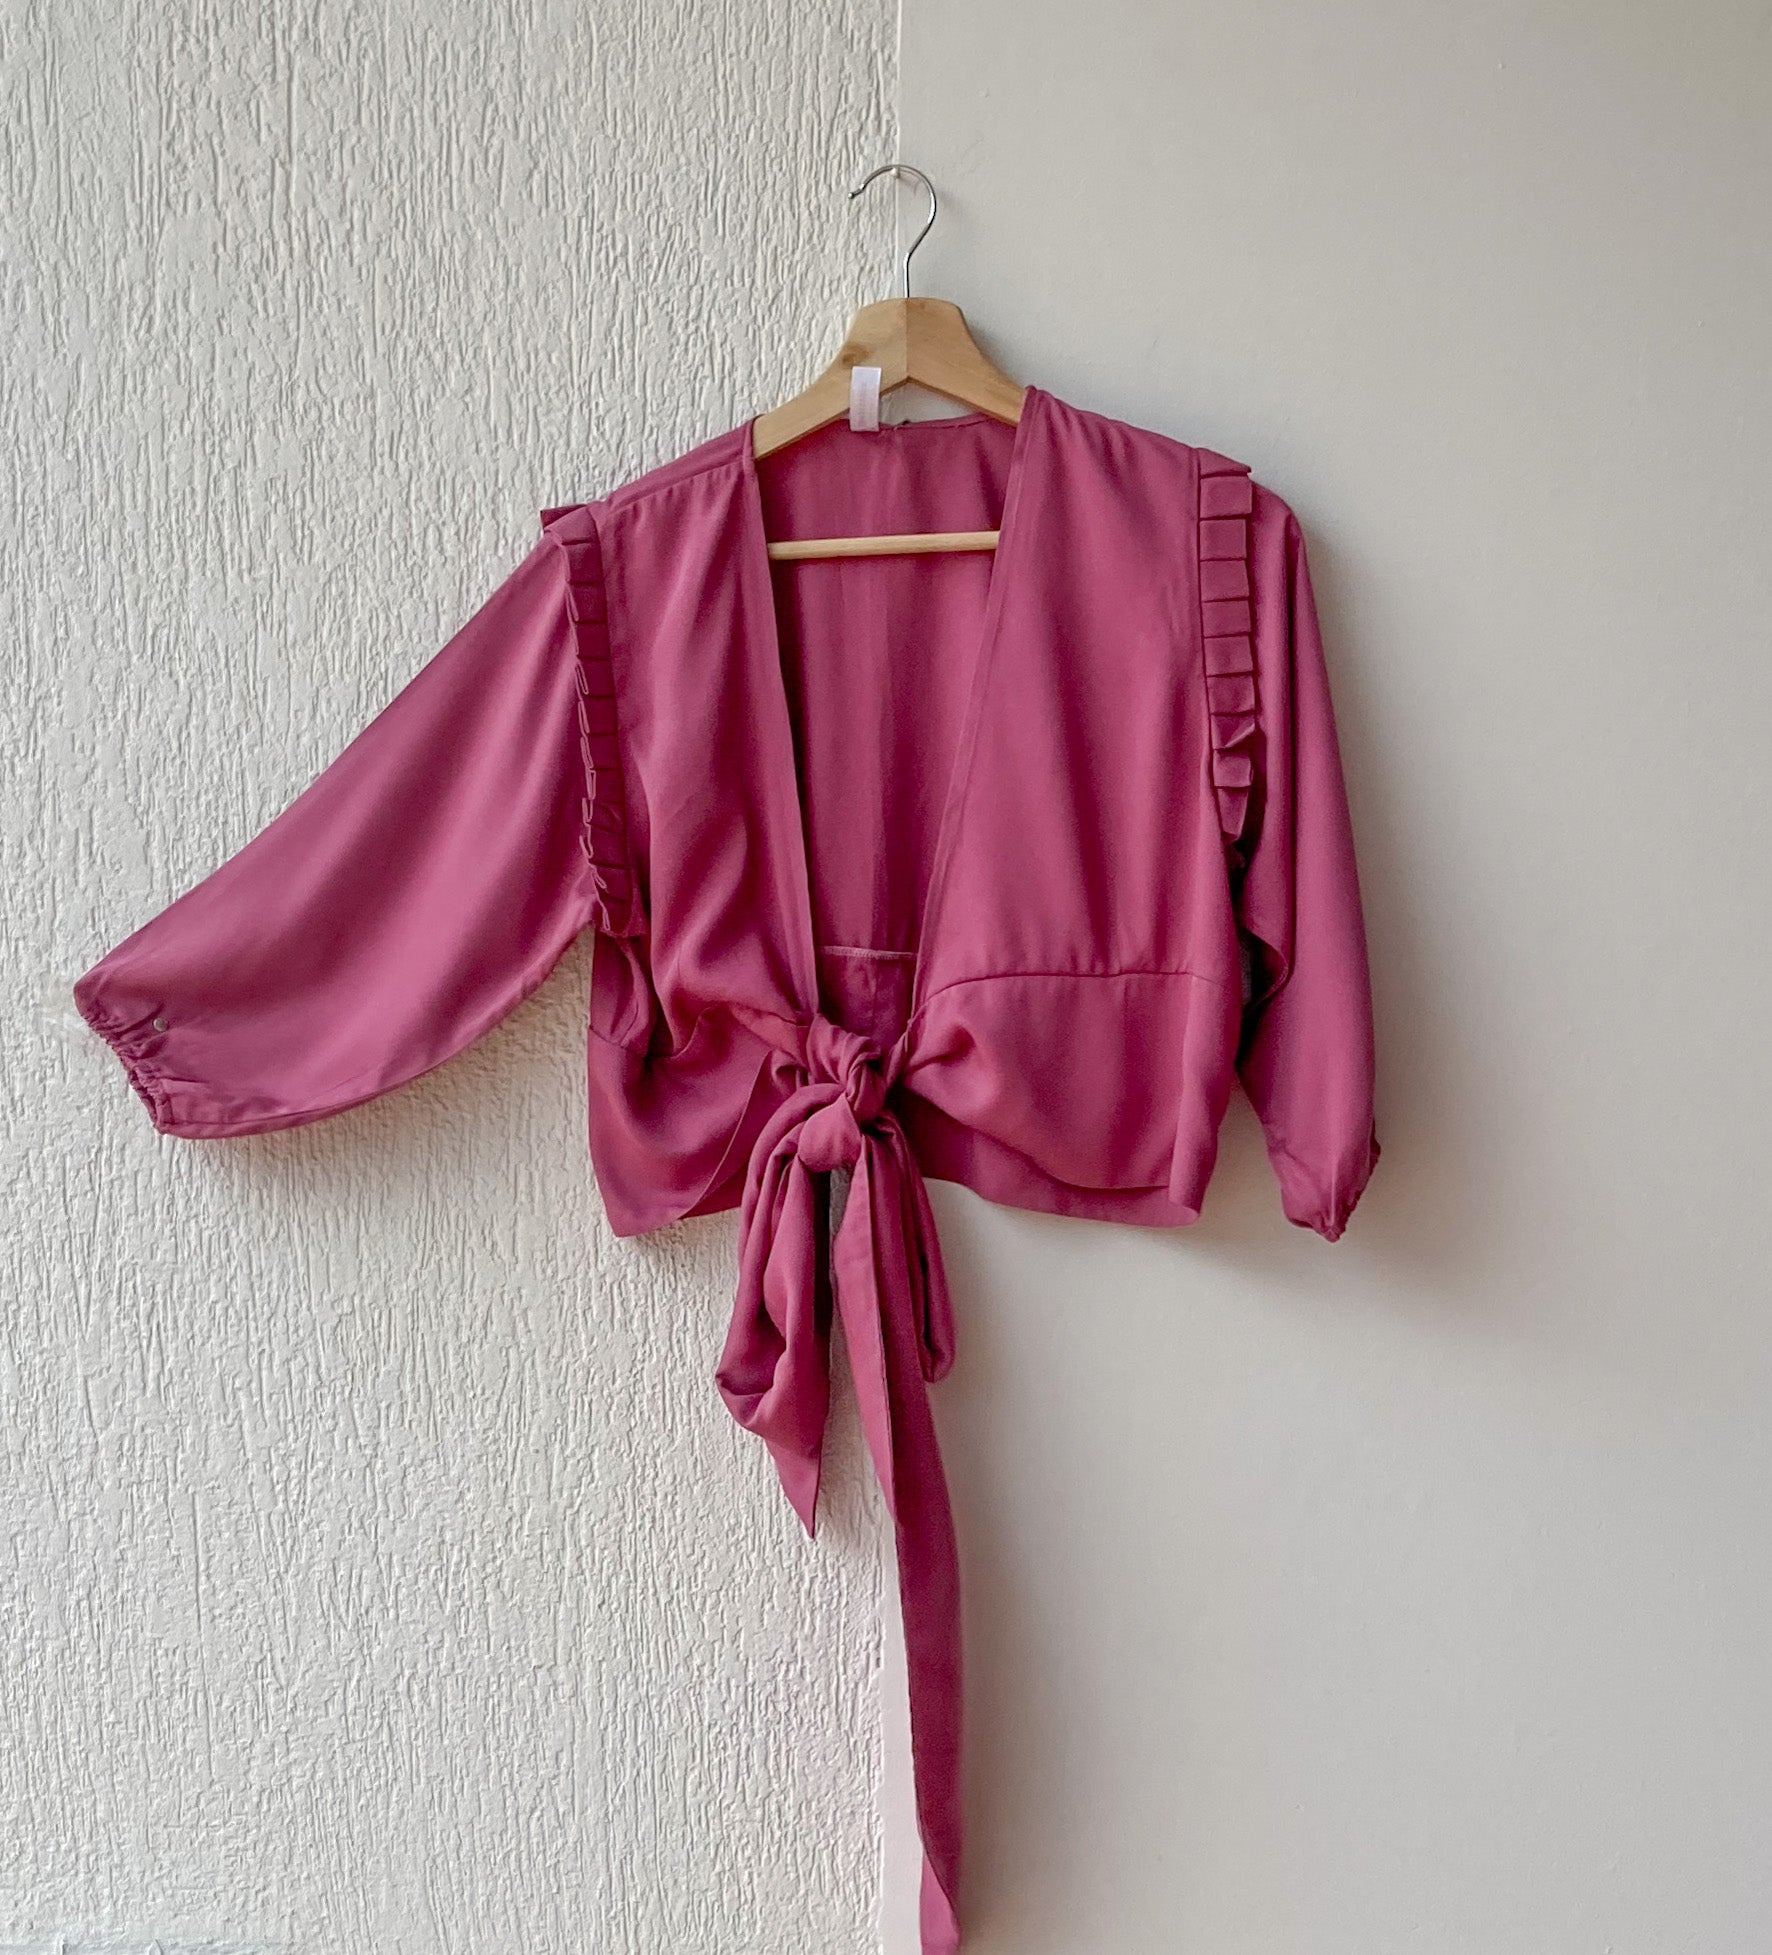 Blusa manga 3/4 con resorte en el puño, boleros en la siza y amarrado, 100% Colombiano. Color rosa